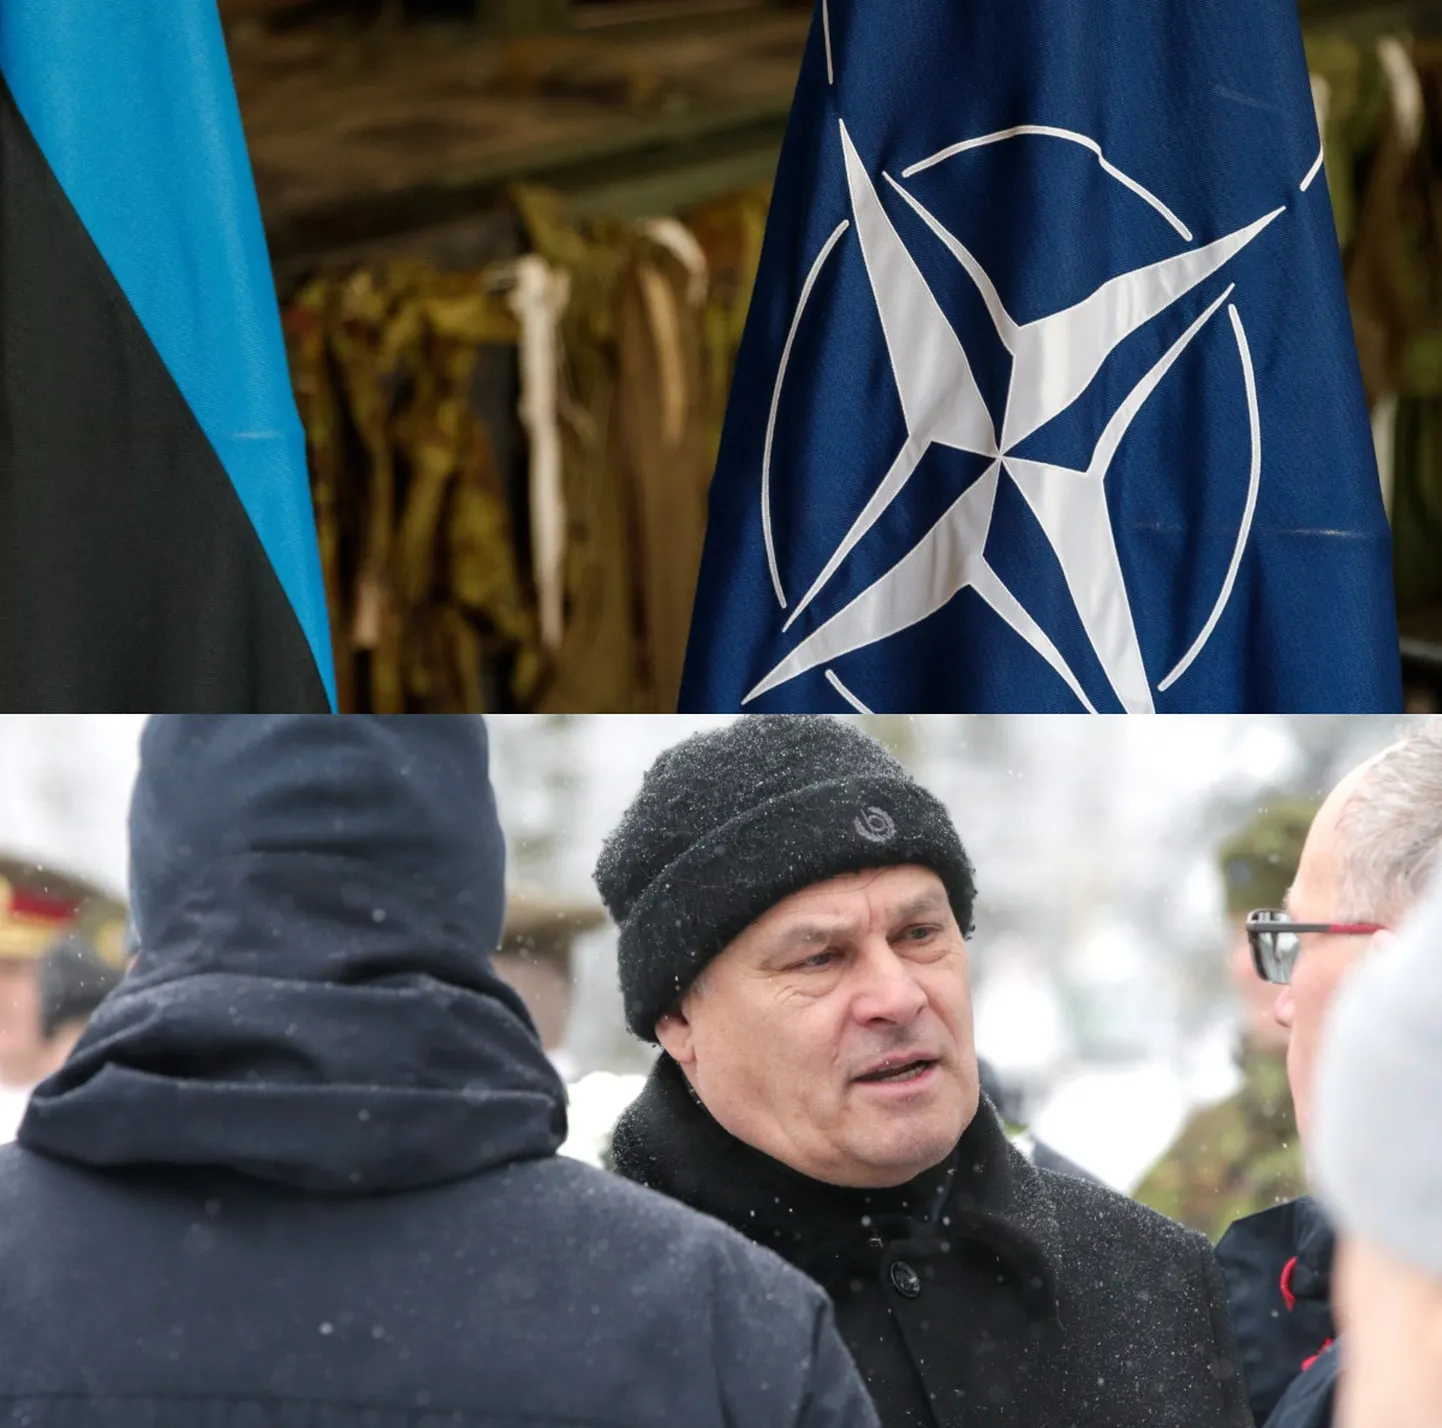 Мэр Нарвы Яан Тоотс и флаг НАТО. Фото иллюстративное.